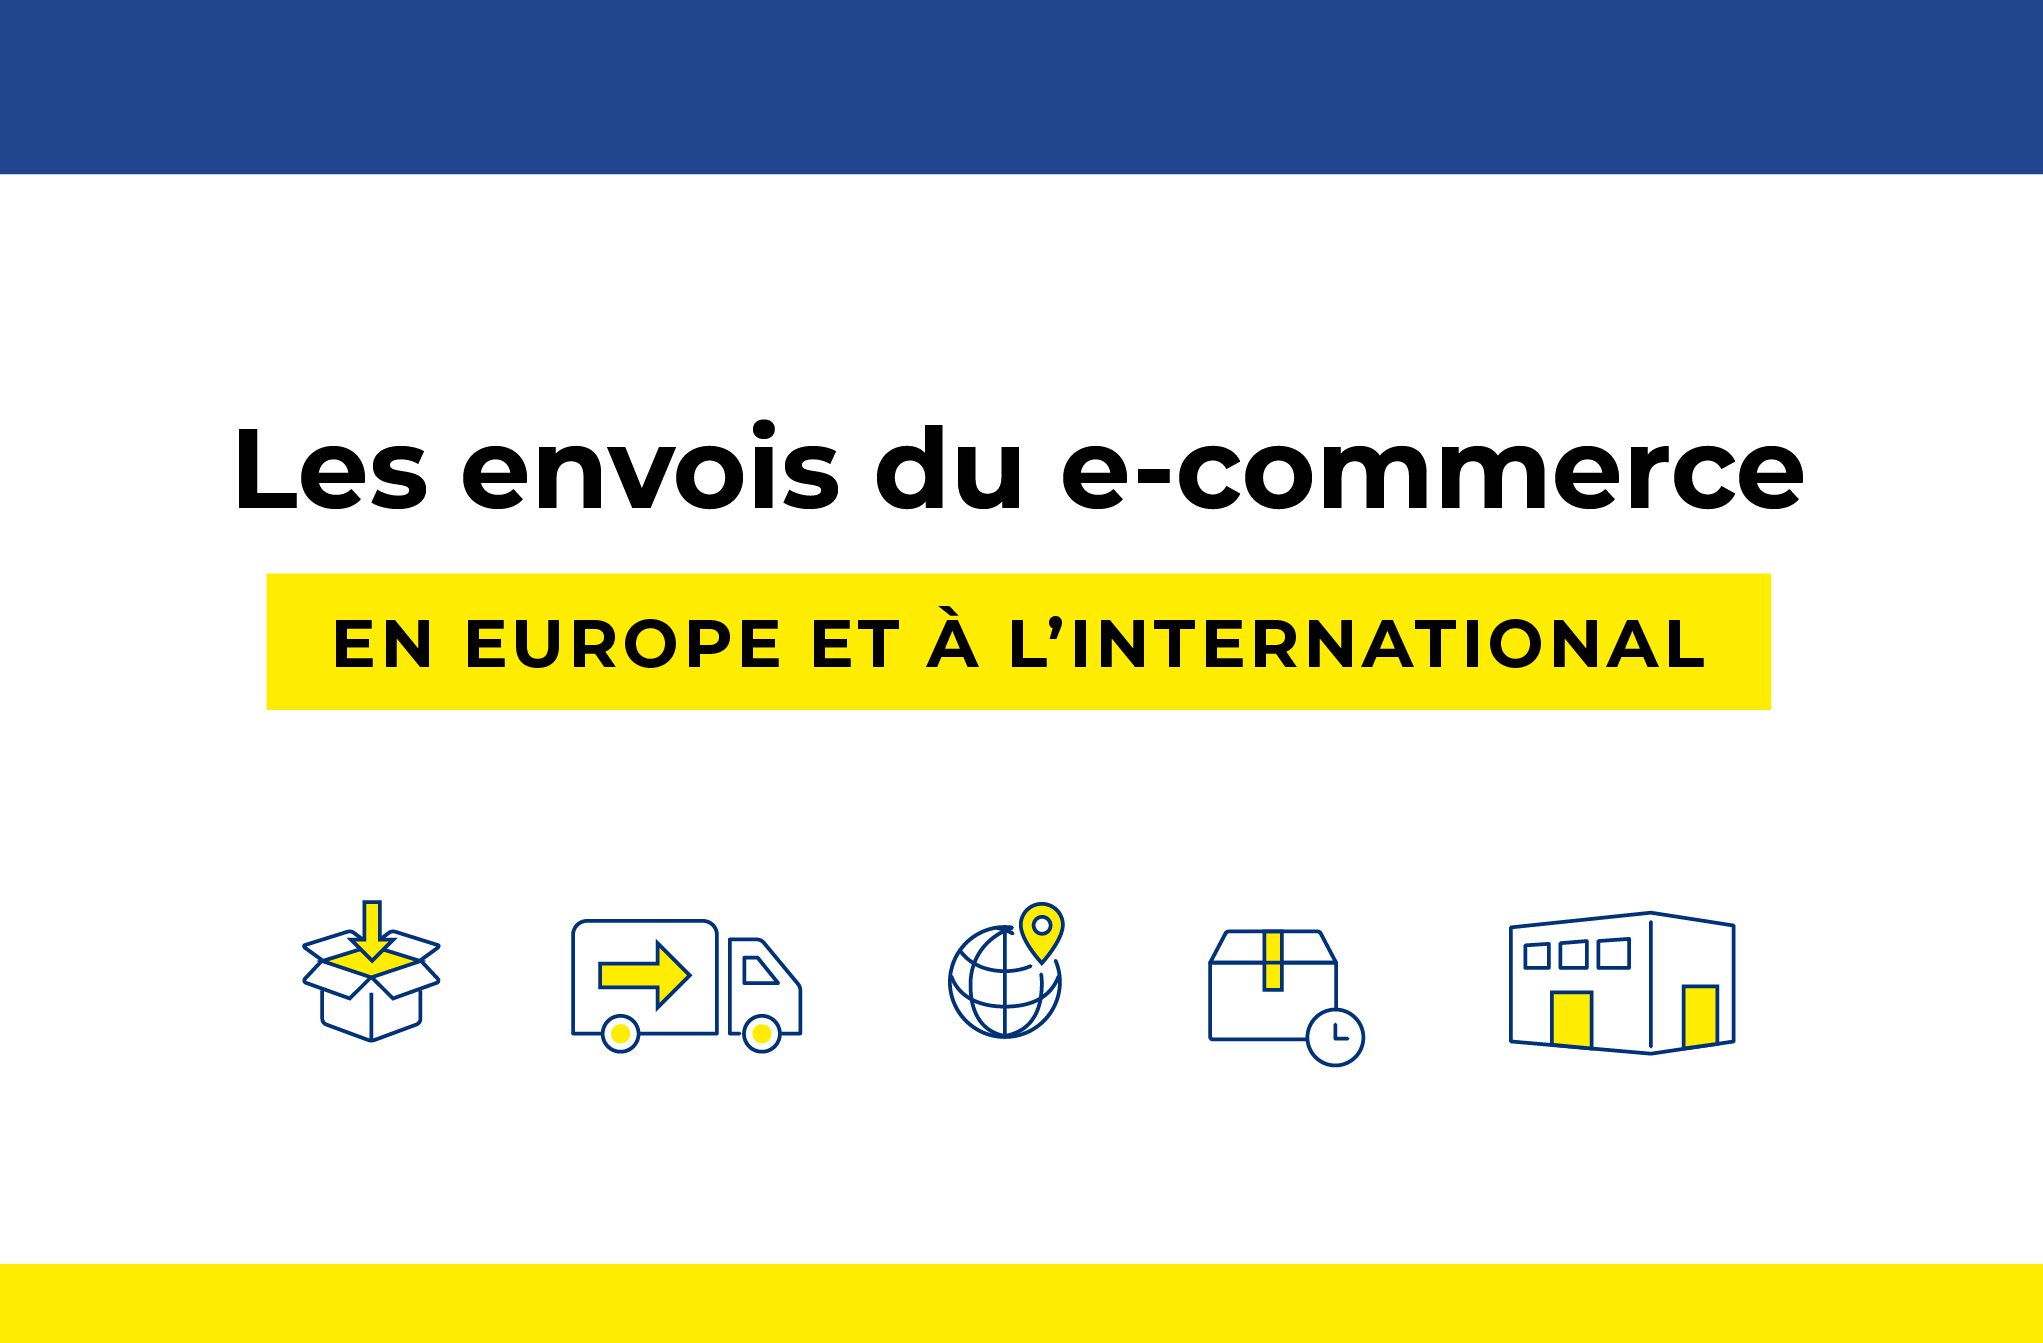 Les envois du e-commerce en Europe et à l'International